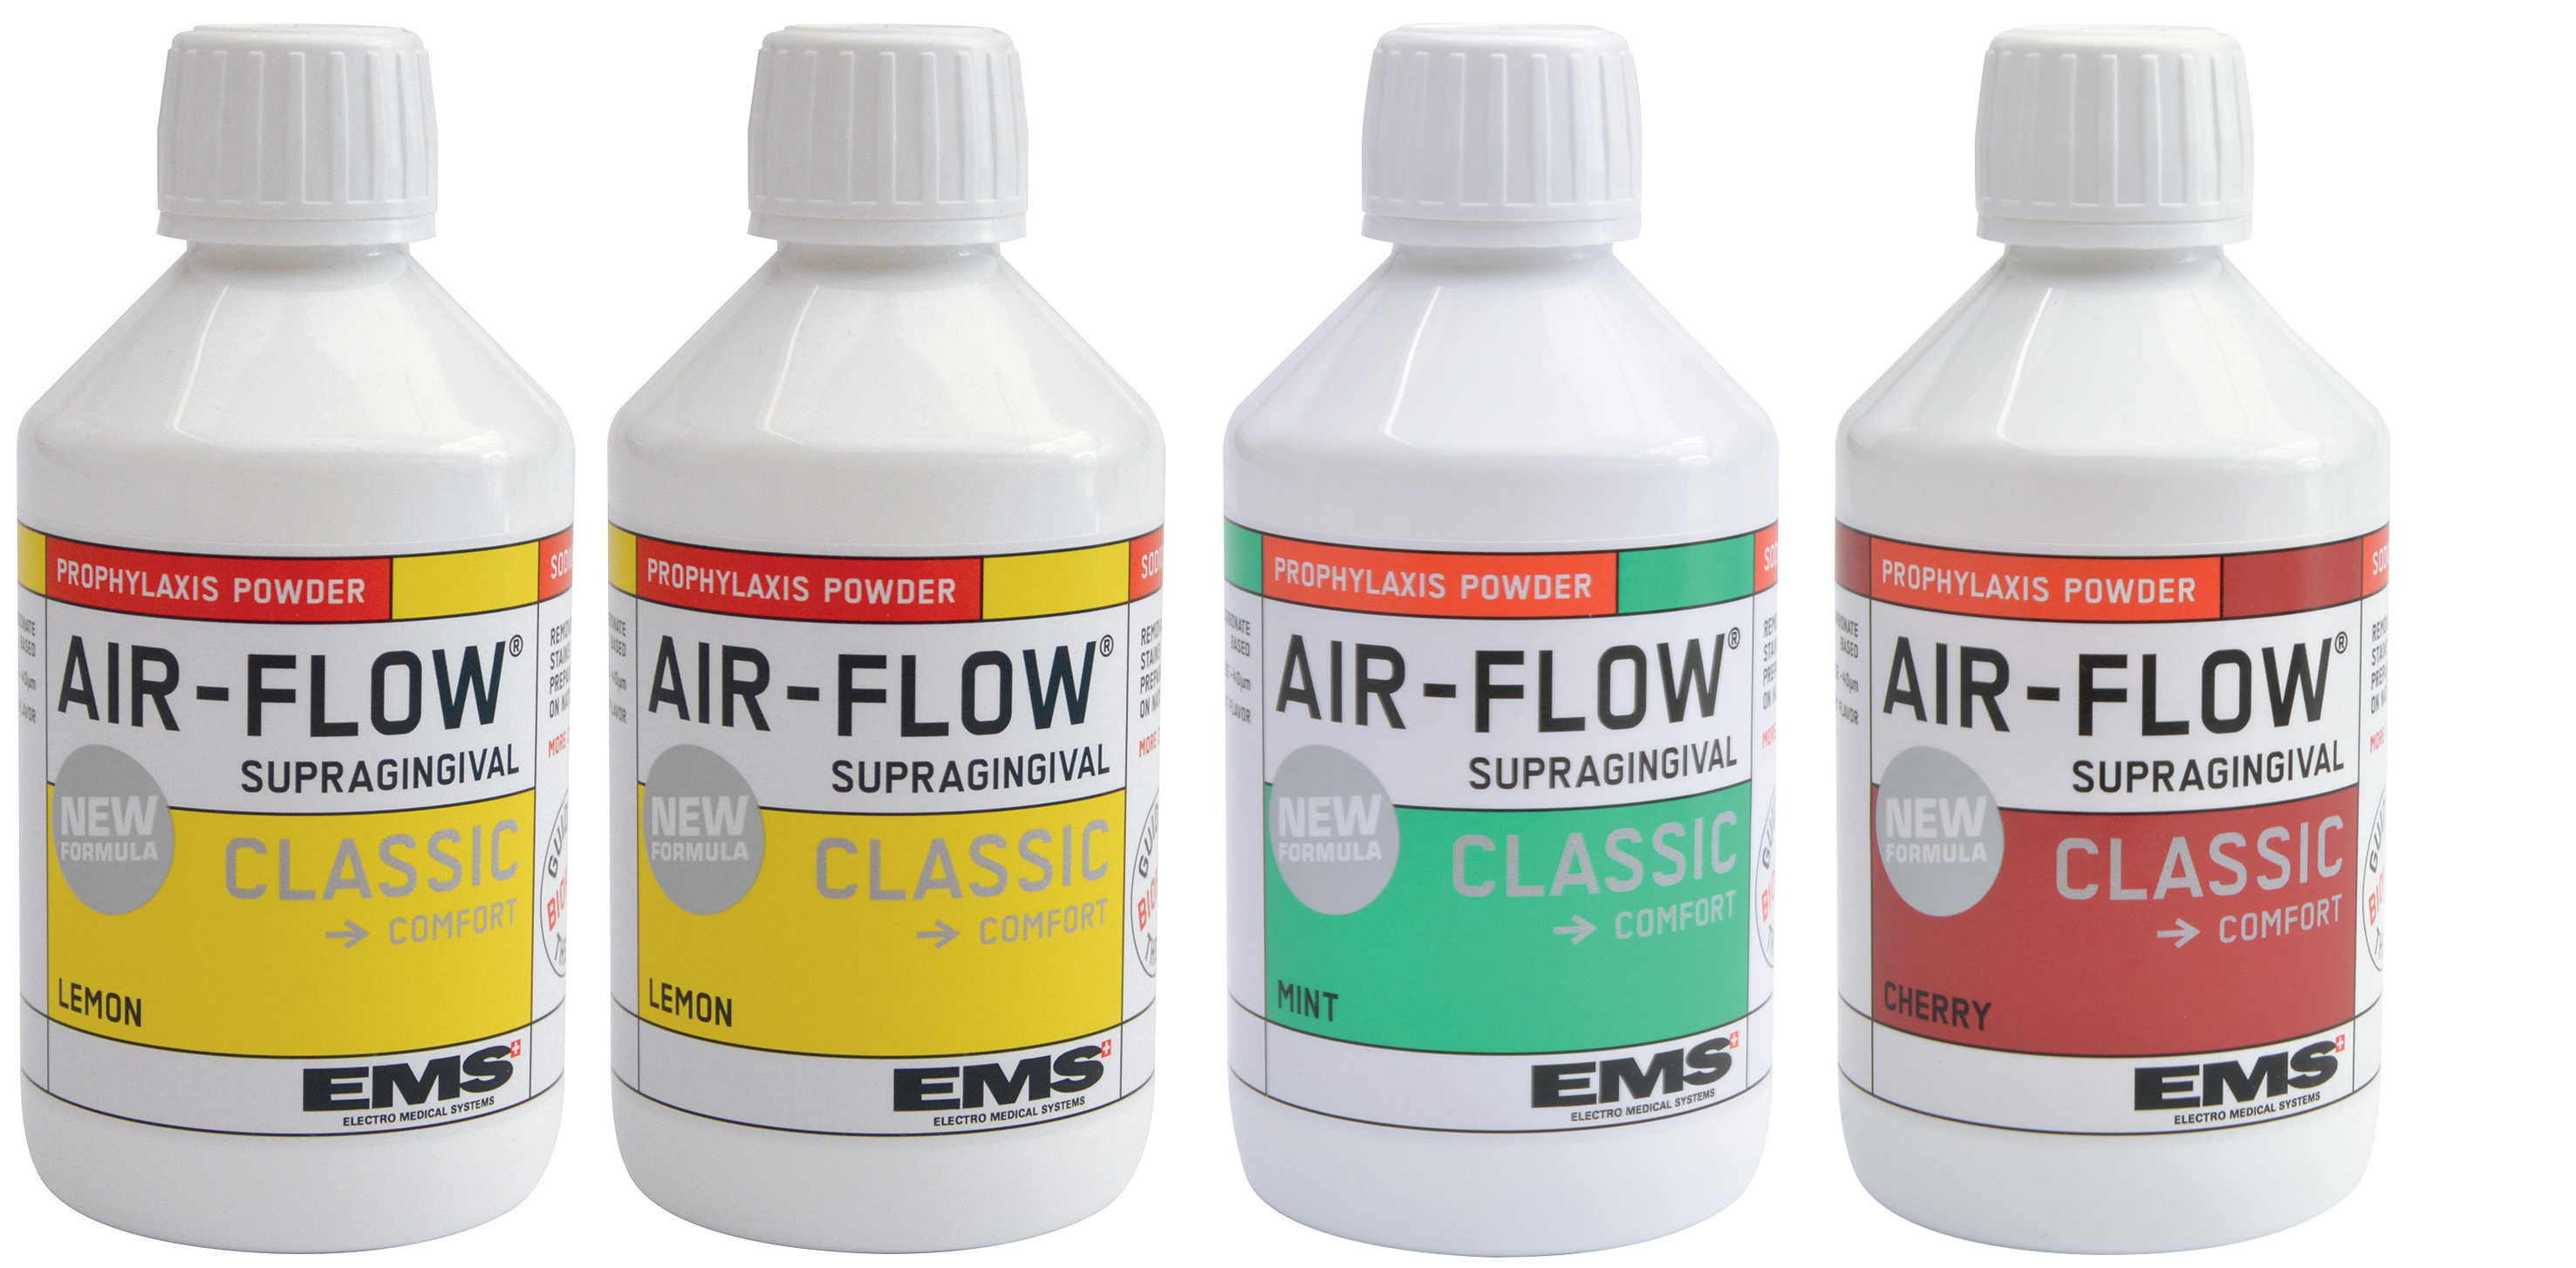 Air Flow Classic Ems 4 flaconi assortiti da 300g